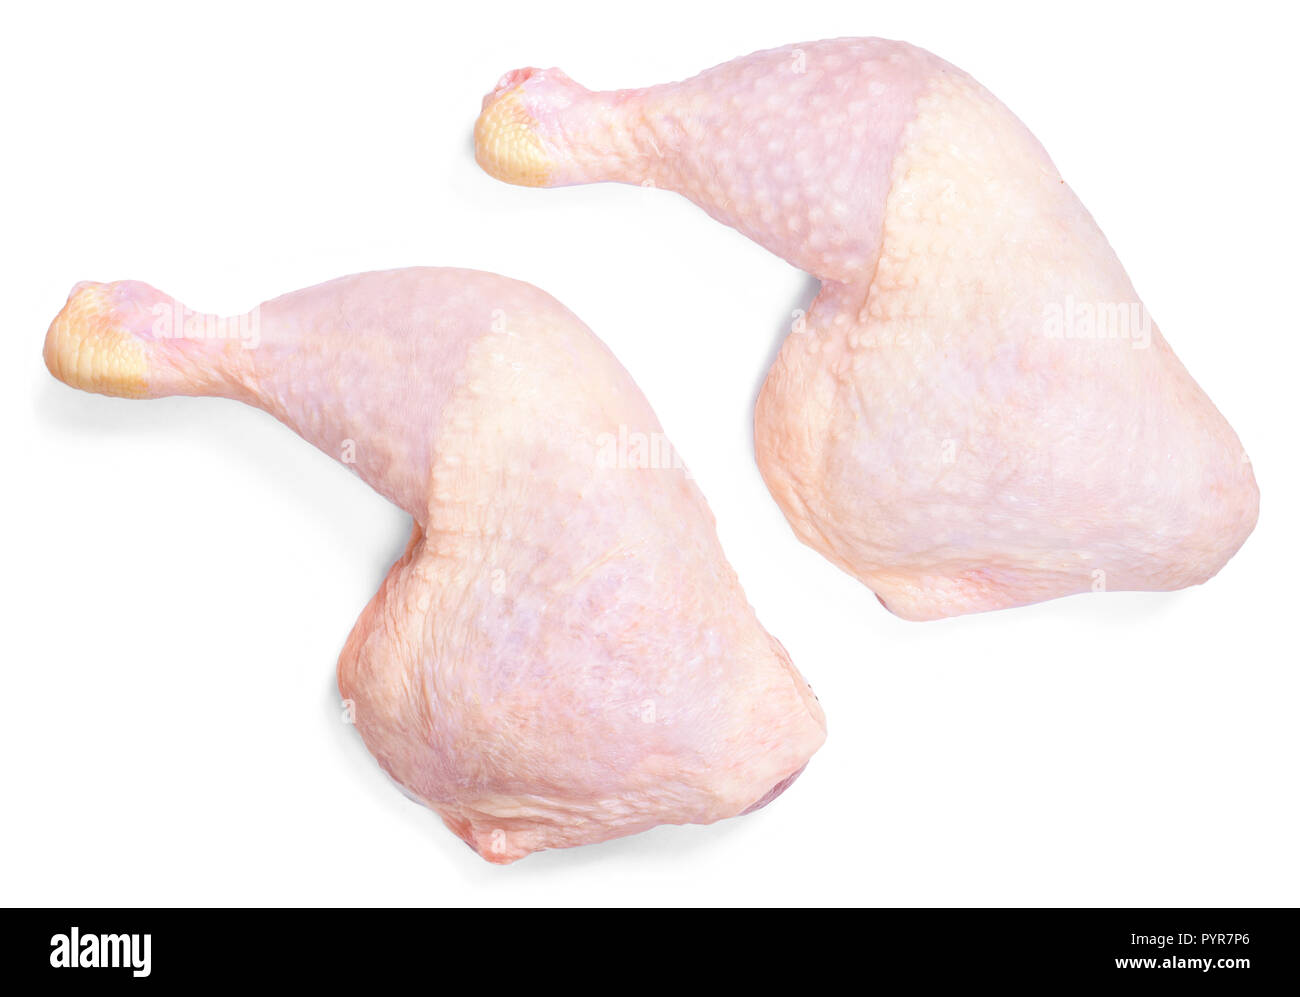 Frisches rohes Hühnerfleisch, auf weißem Hintergrund. Chicken Drumsticks oder Beine, Ansicht von oben. Stockfoto